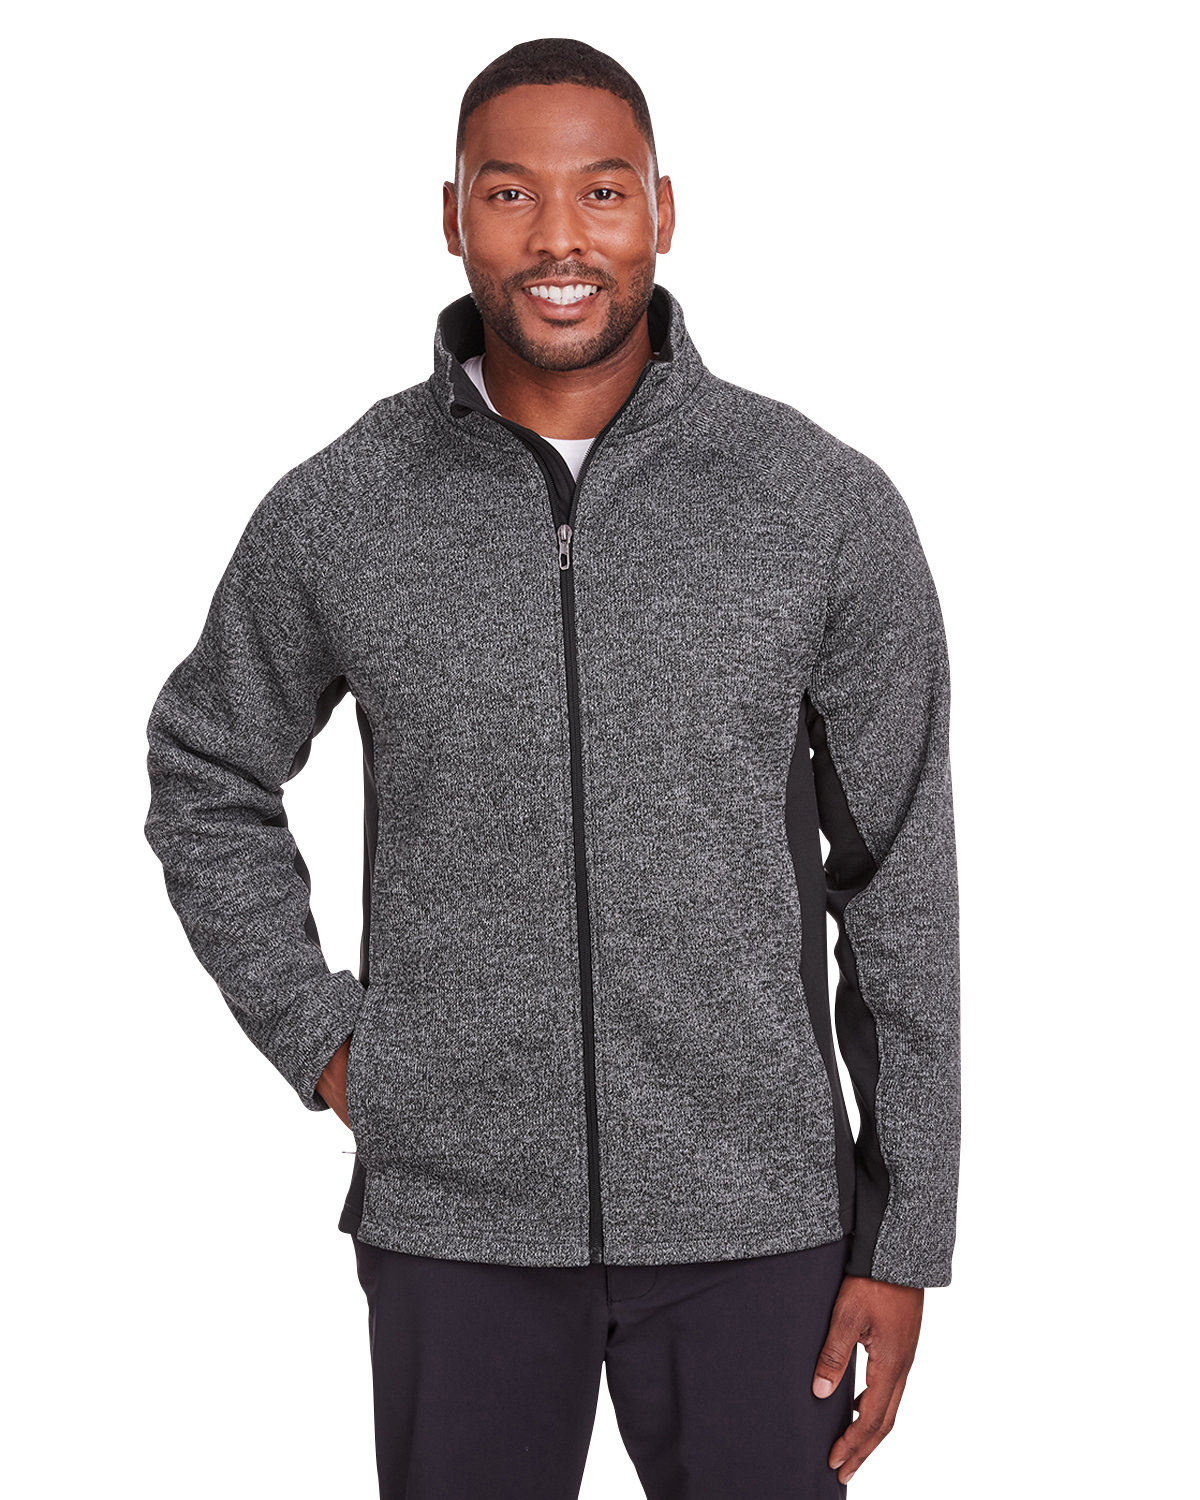 Spyder Men's Constant Full-Zip Sweater Fleece Jacket BLACK HTHR/ BLK 